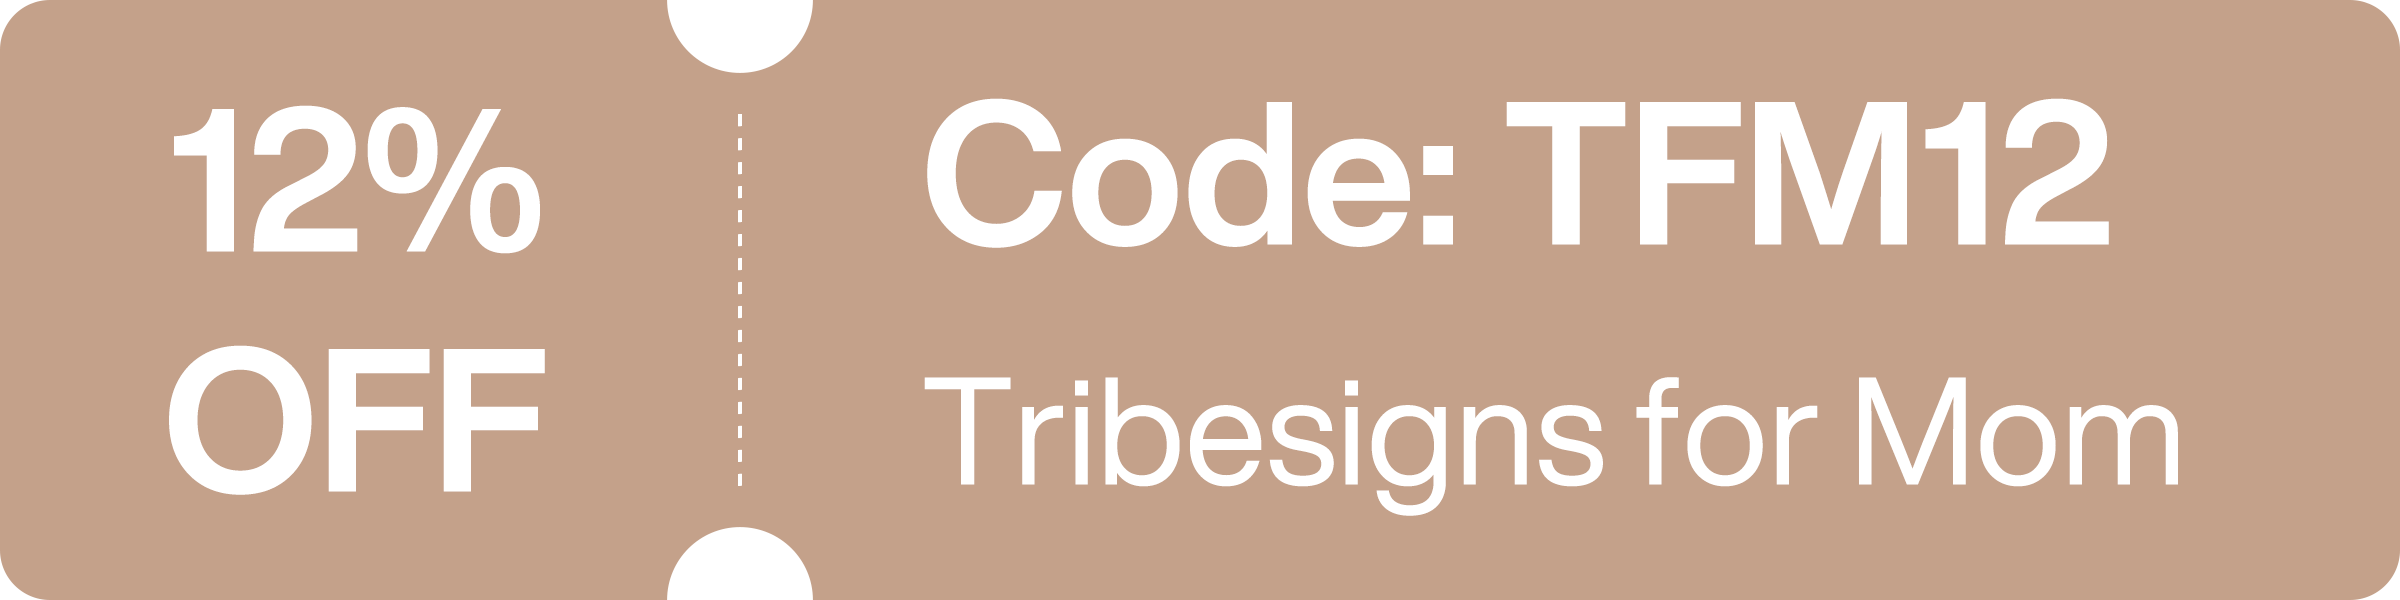 Tribesigns_for_Mom-2400x600-4_2793a73f-53ed-49a8-900e-f5df69ff2976